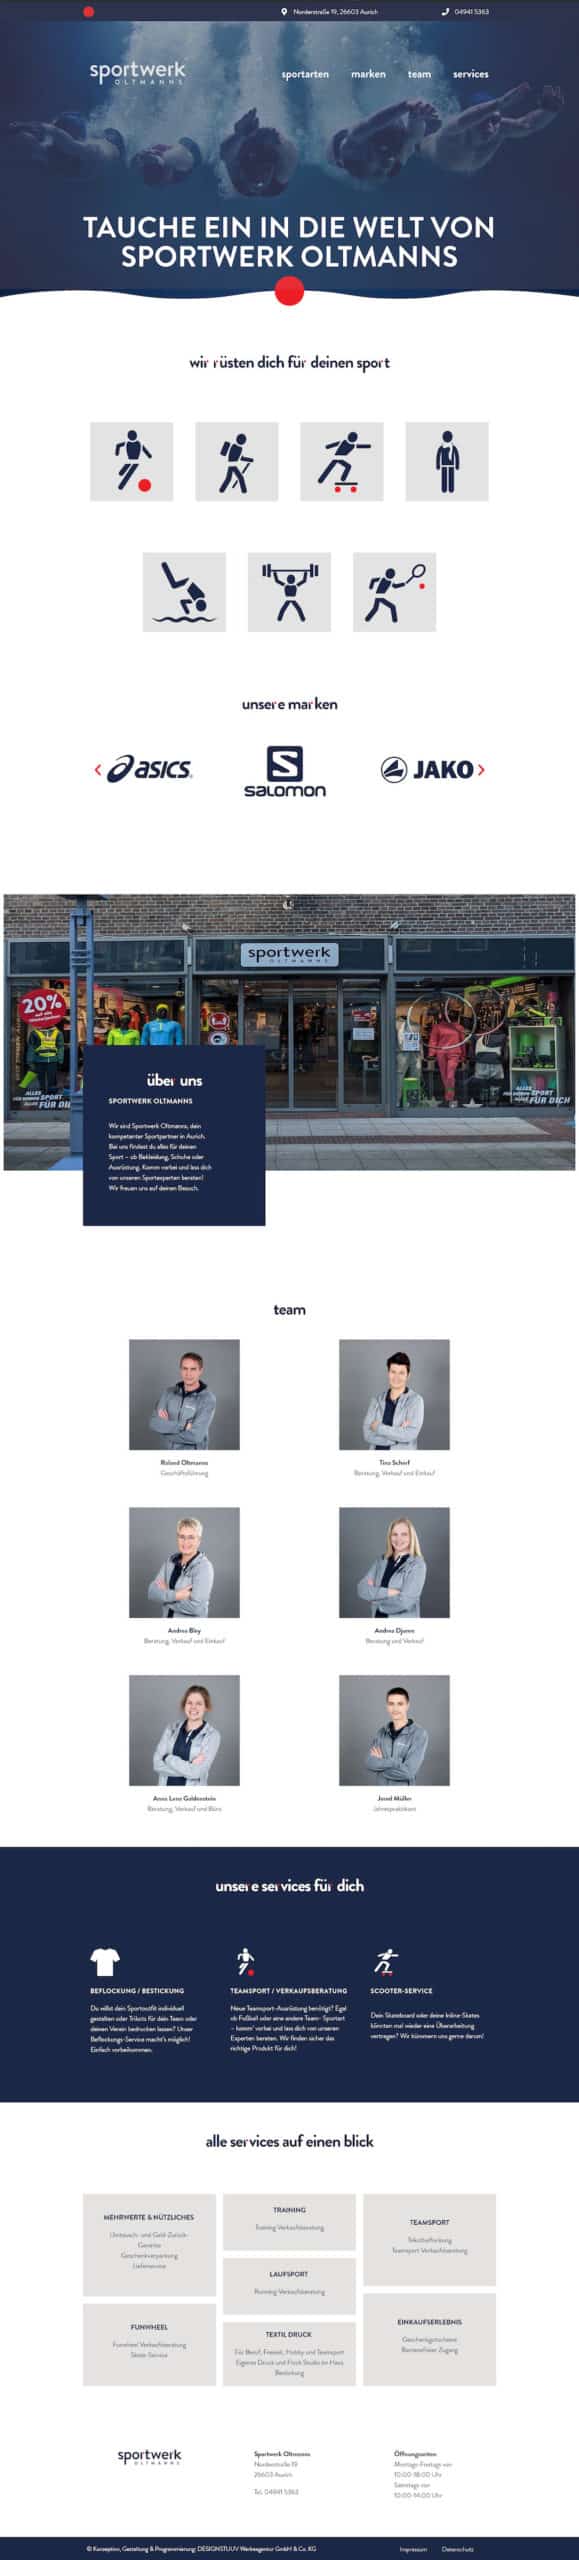 sportwerk-oltmanns-website-designstuuv-werbeagentur